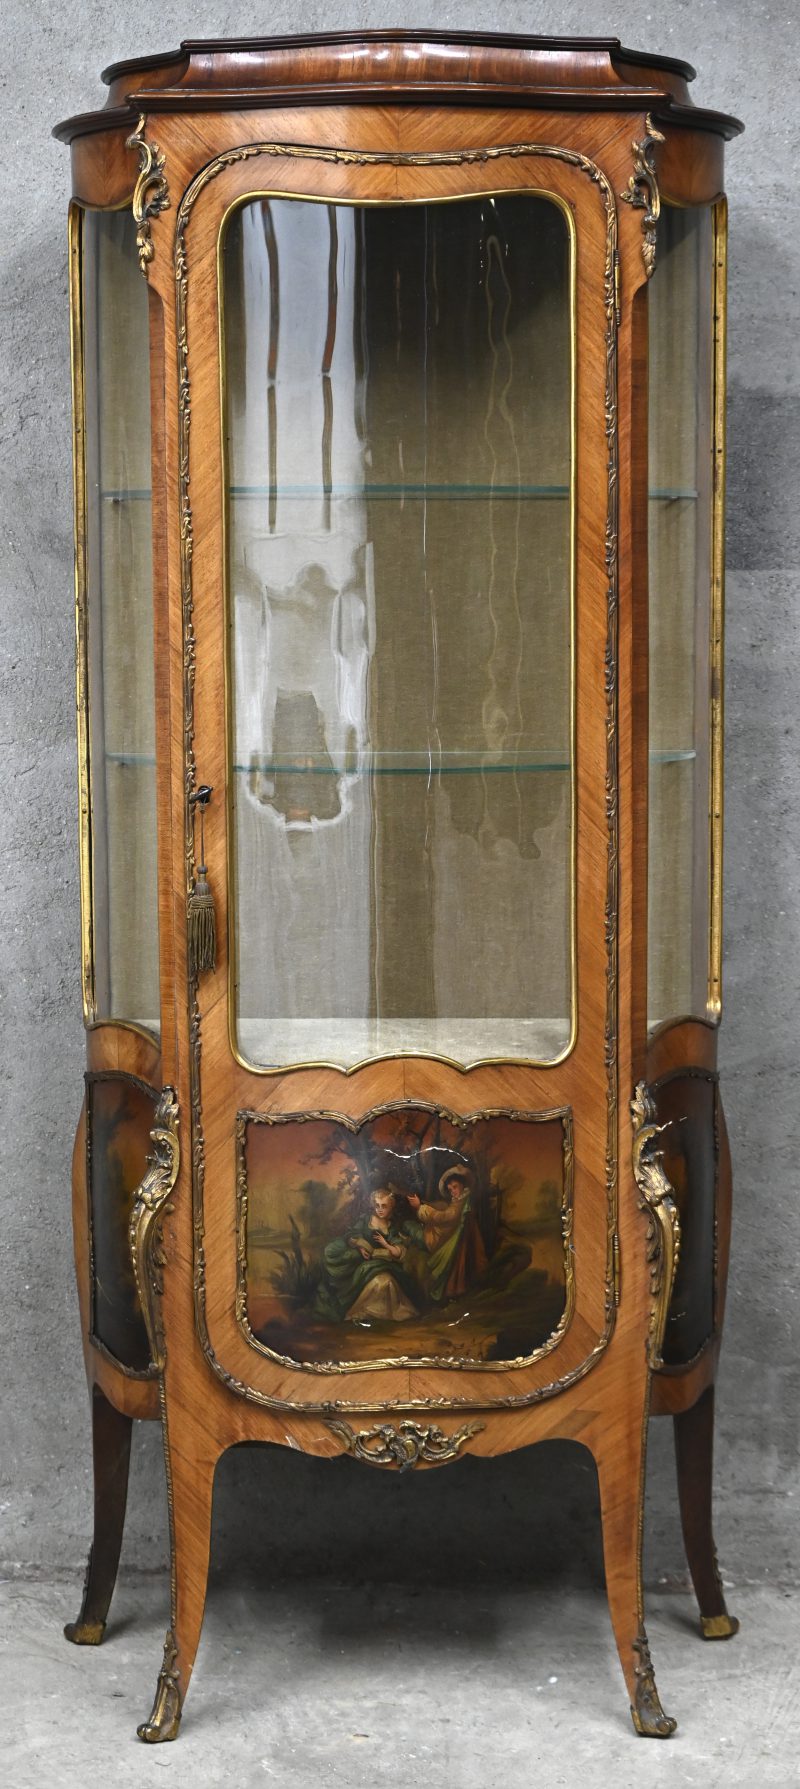 Een houten vitrine kast genre vernis Martin met 2 glazen schabben. Versierd met bronzen monturen en figuratief decor.